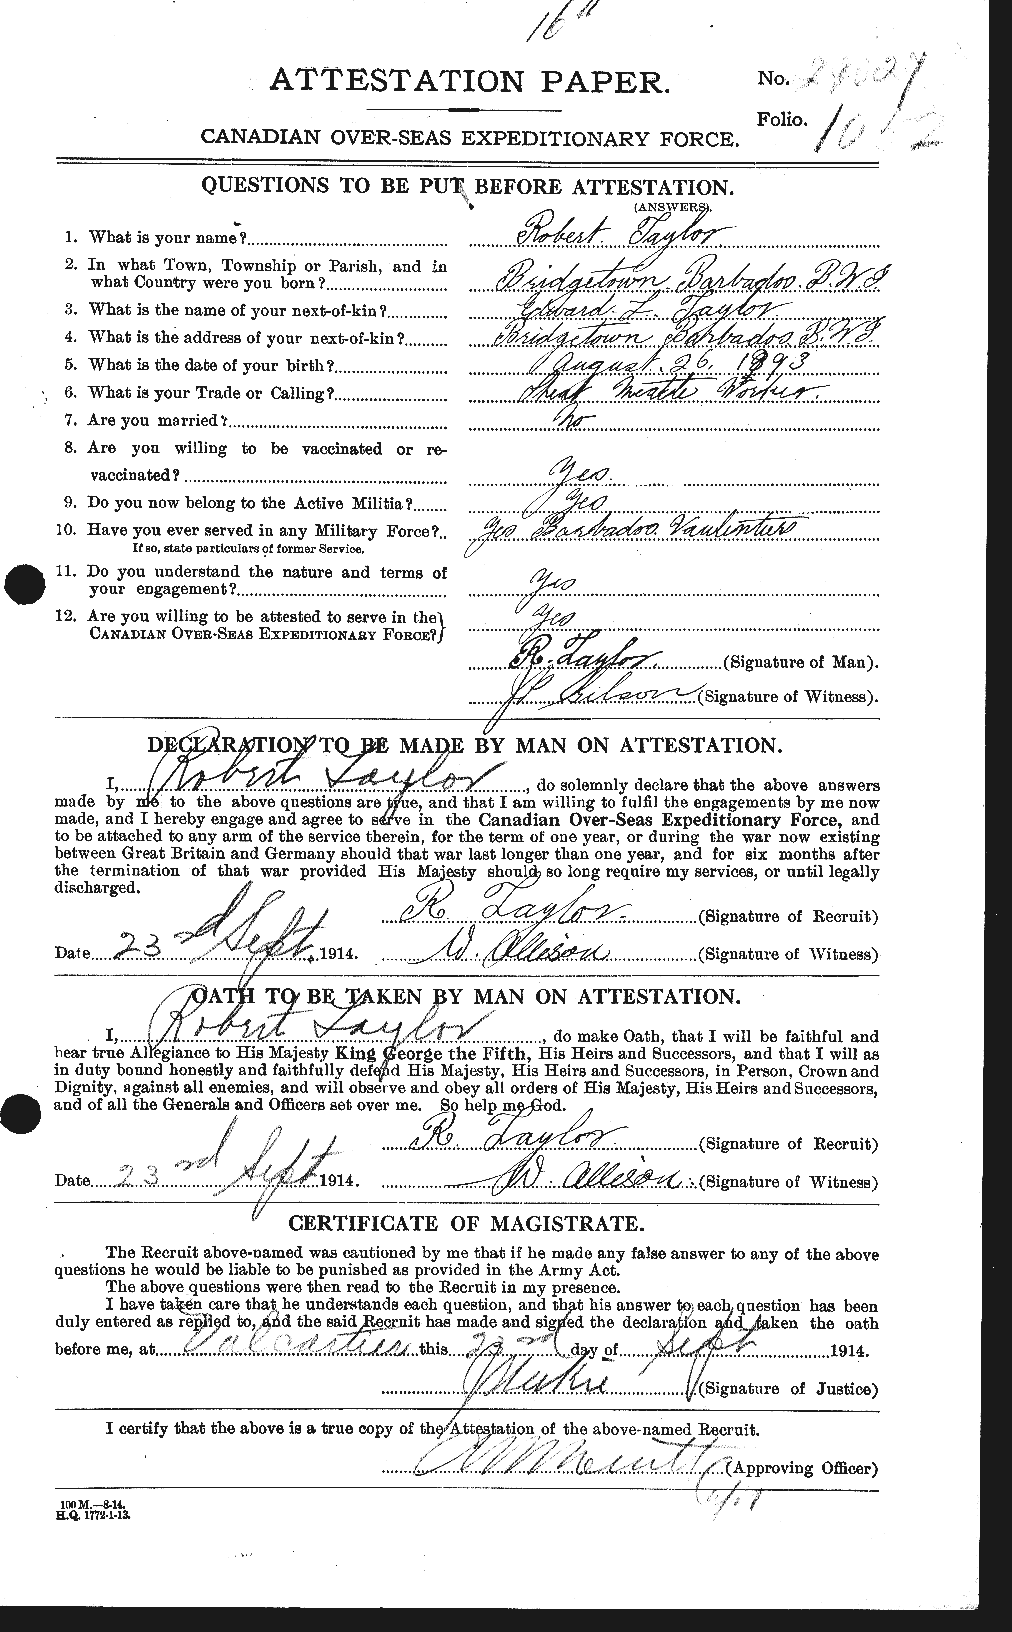 Dossiers du Personnel de la Première Guerre mondiale - CEC 627451a